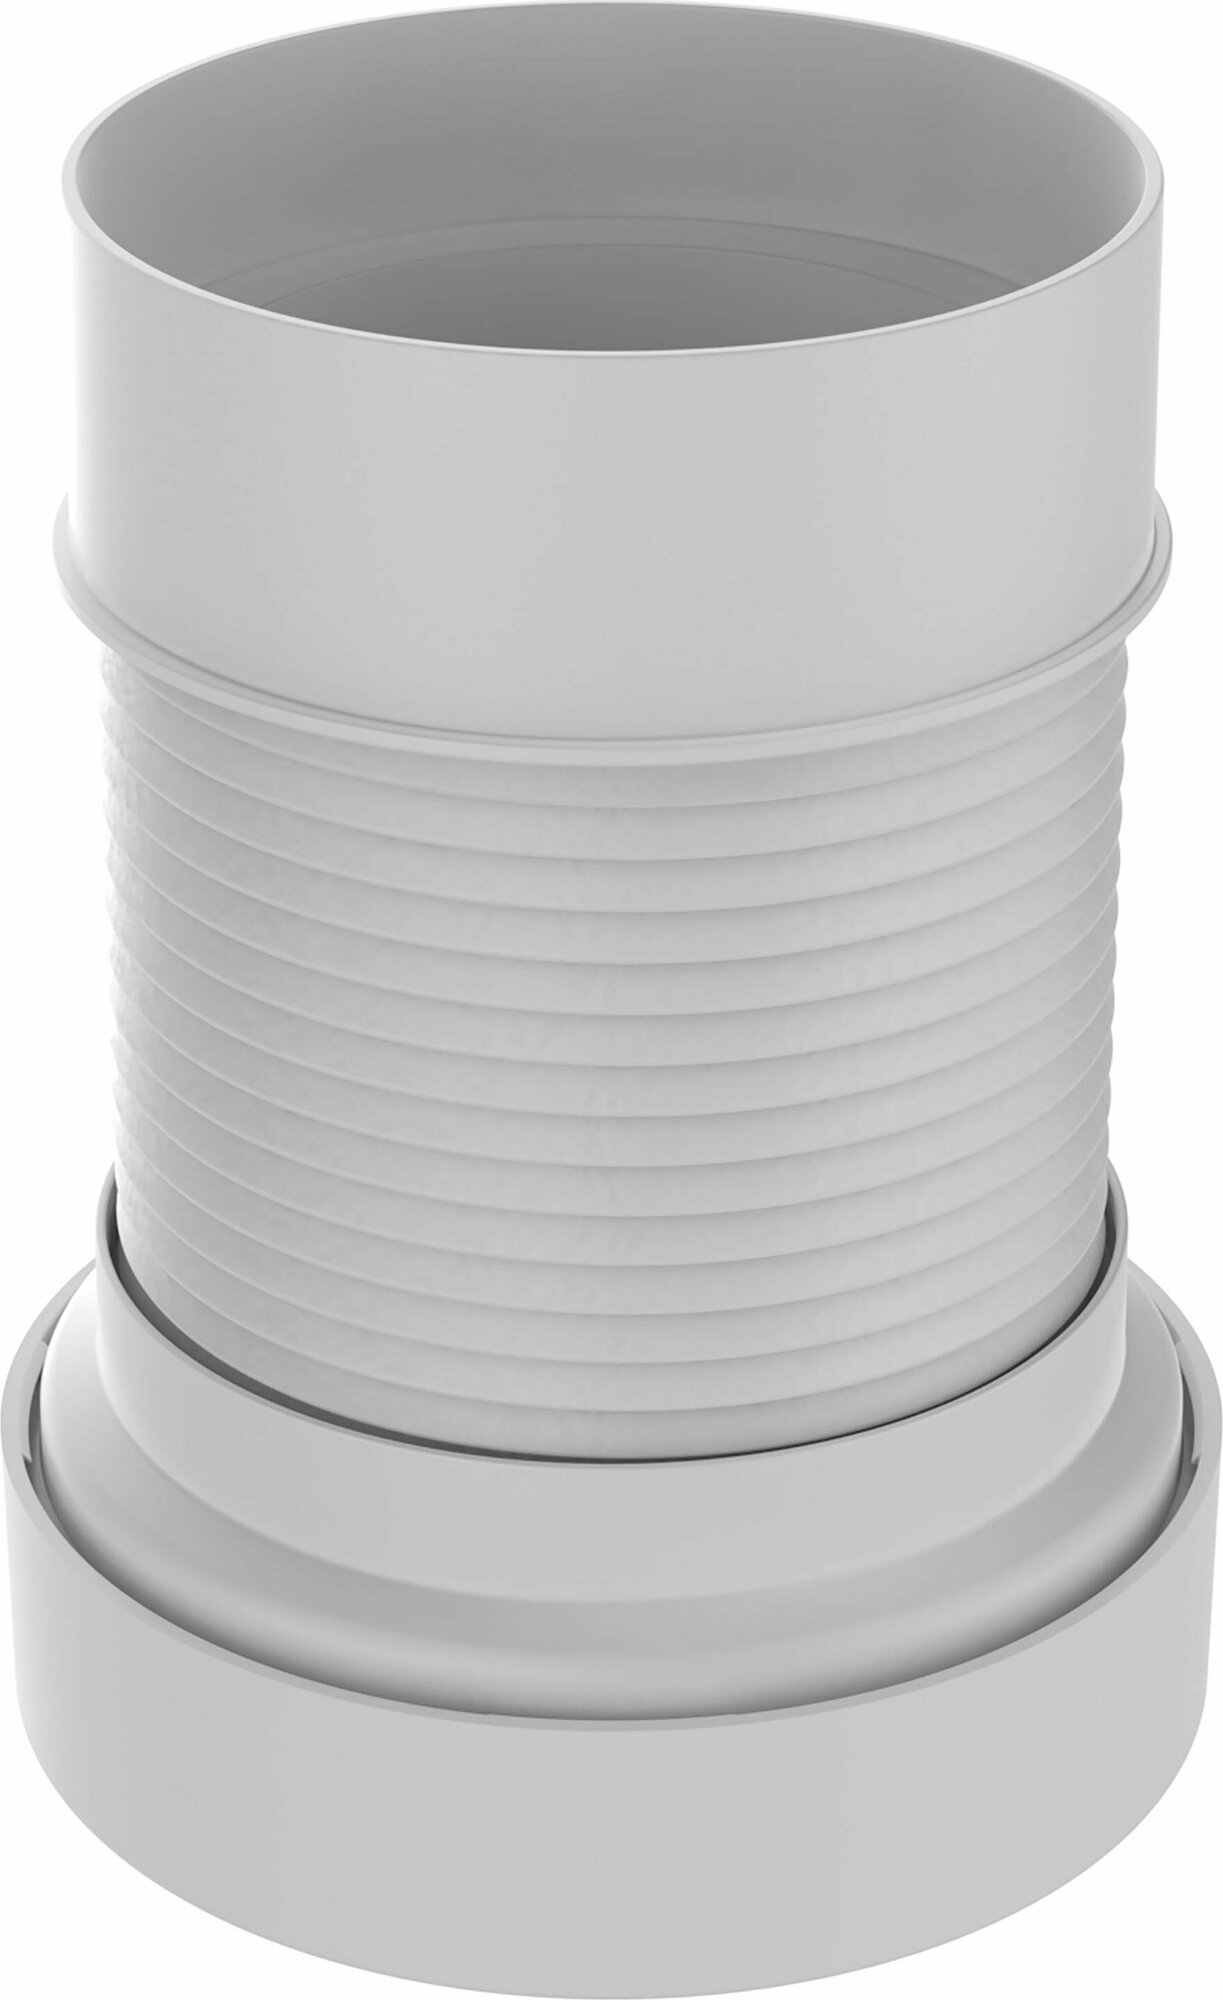 Удлинитель гибкий (гофра) для унитаза армированный - 110 х 200-340 мм 